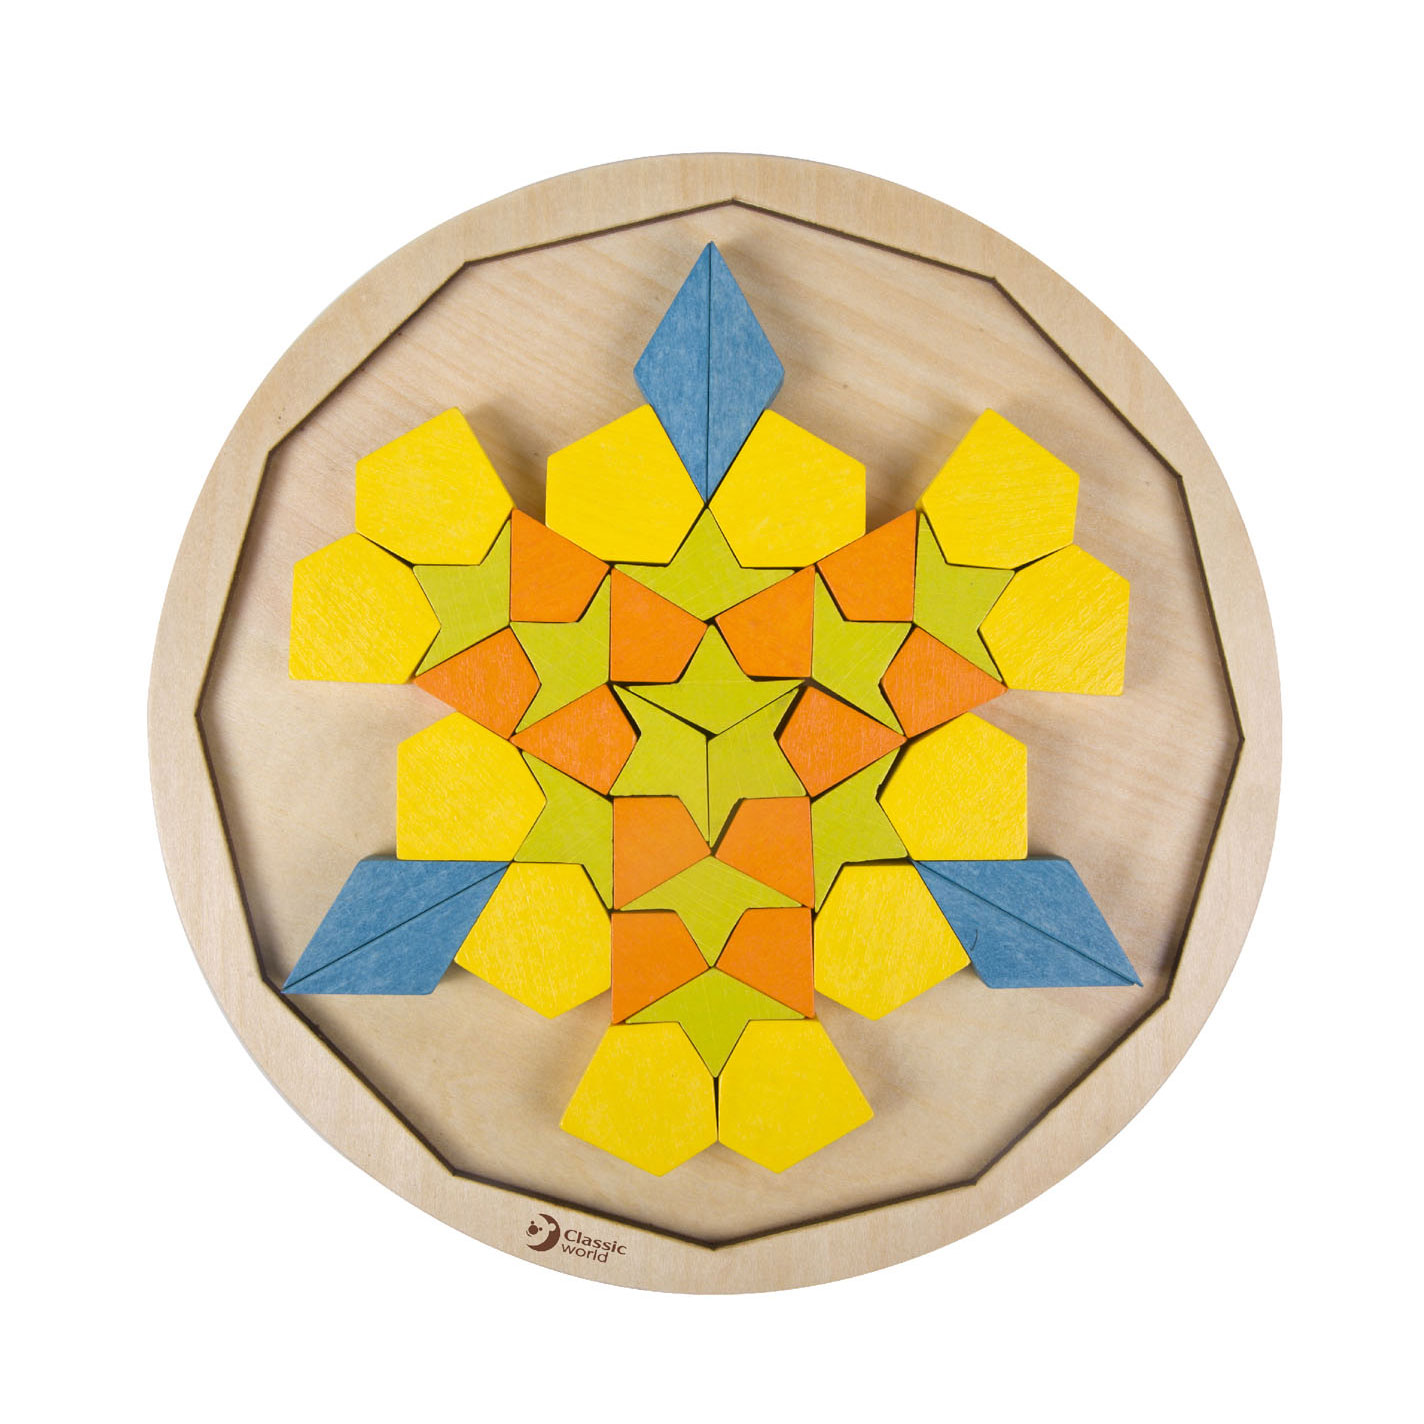 Classic World Holz-Mandala-Puzzle, 72-teilig.